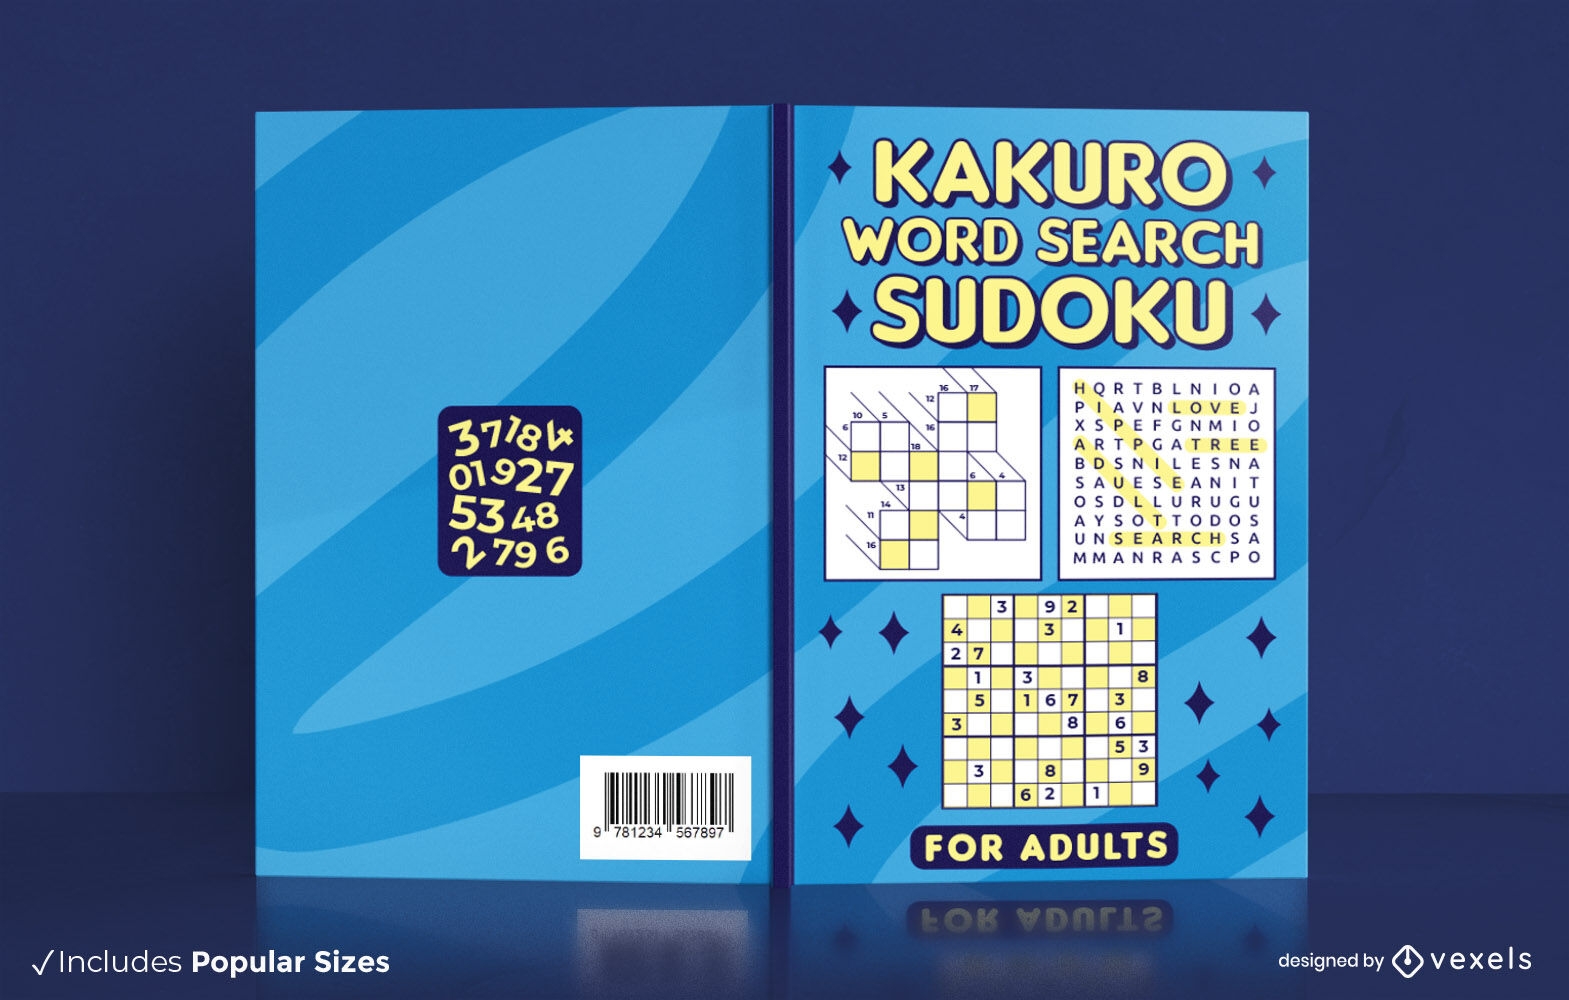 B?squeda de palabras Kakuro y dise?o de portada de libro sudoku KDP